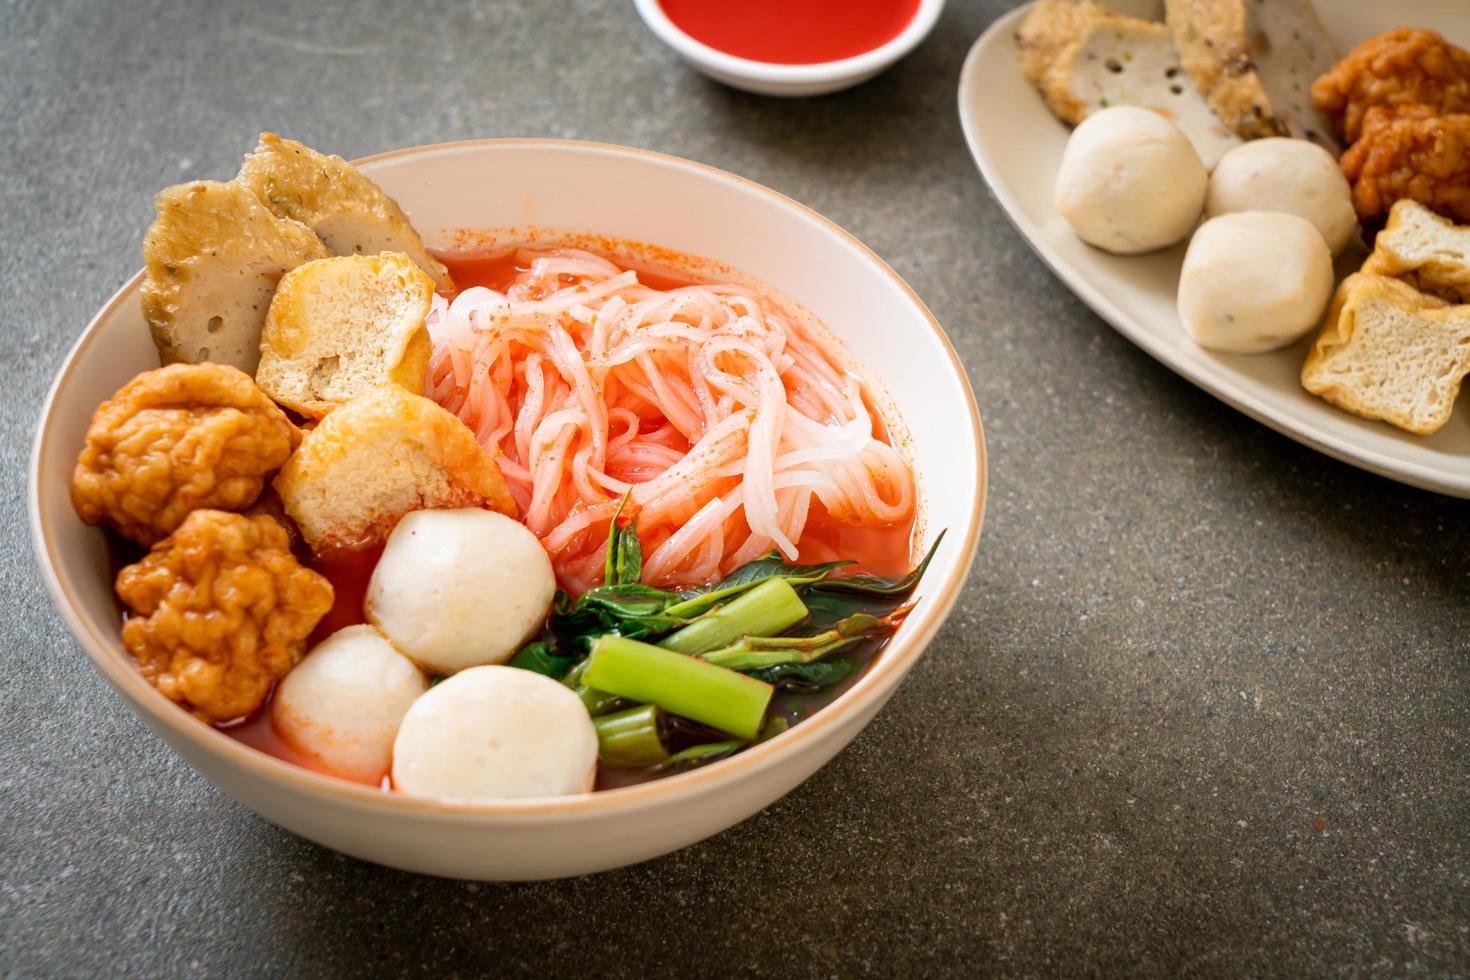 kleine Reisbandnudeln mit Fischbällchen und Garnelenbällchen in rosa Suppe, Yen ta Four oder Yen ta fo - asiatische Küche foto